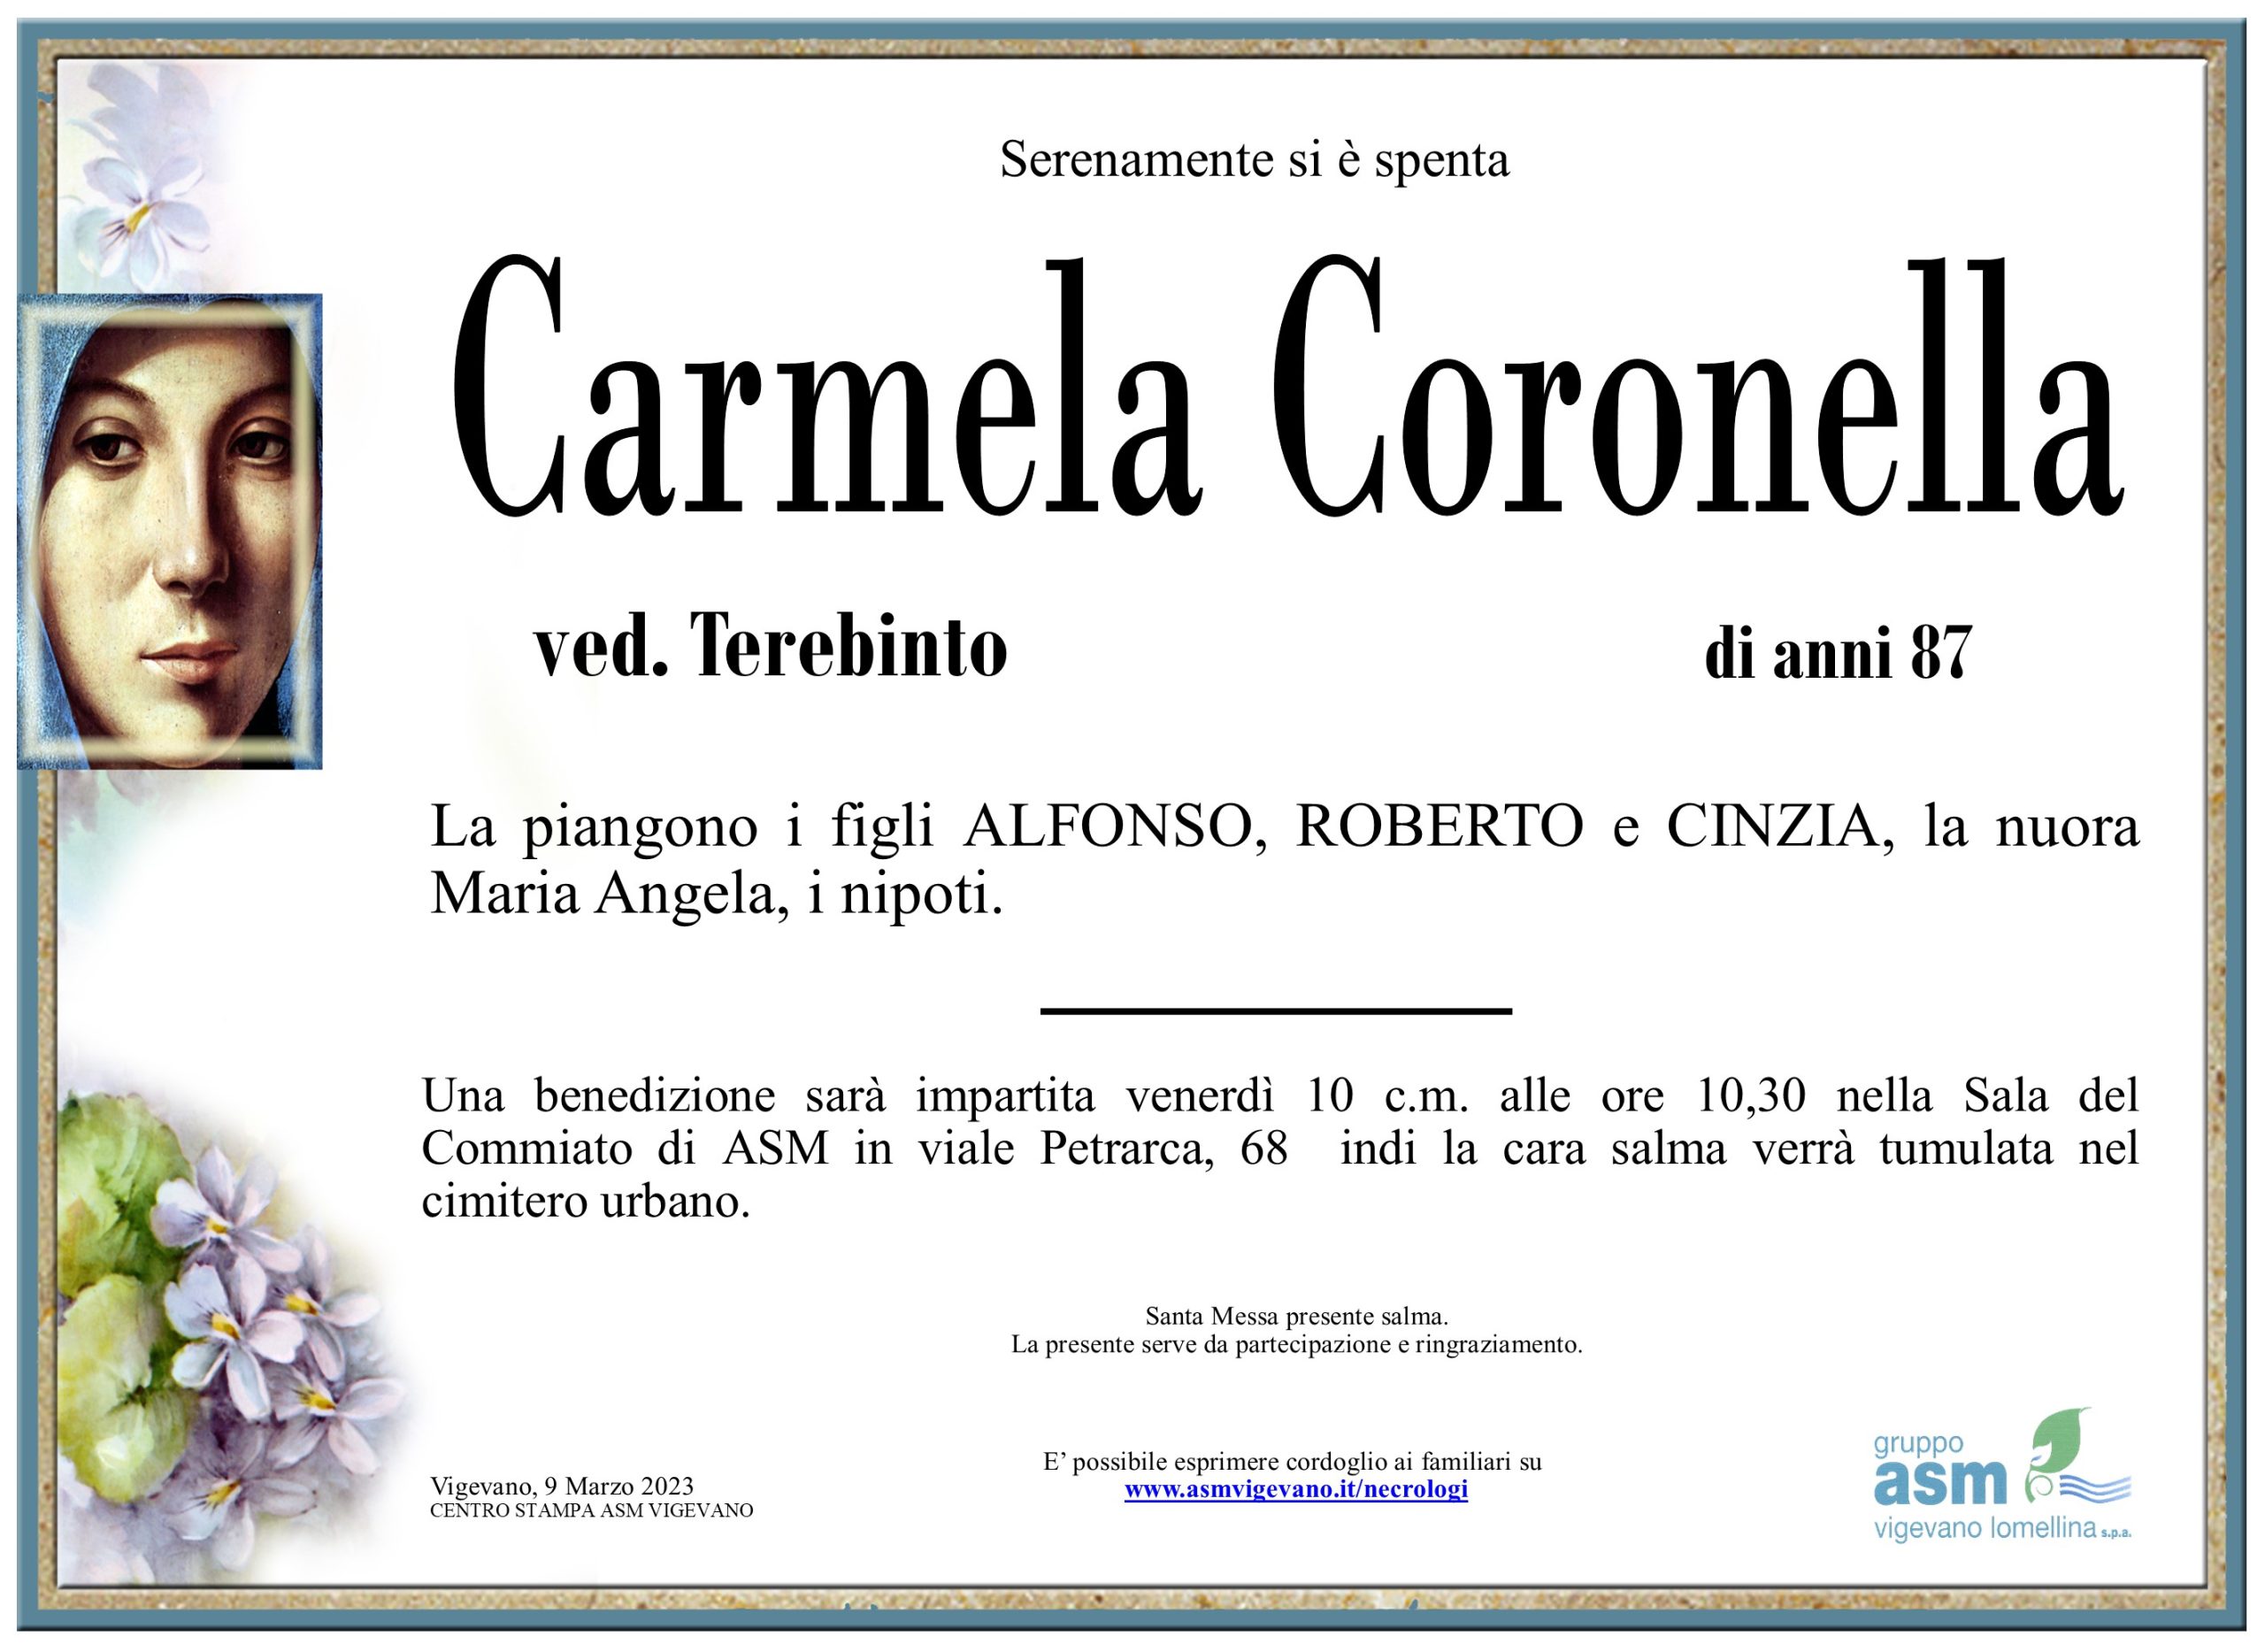 Carmela Coronella